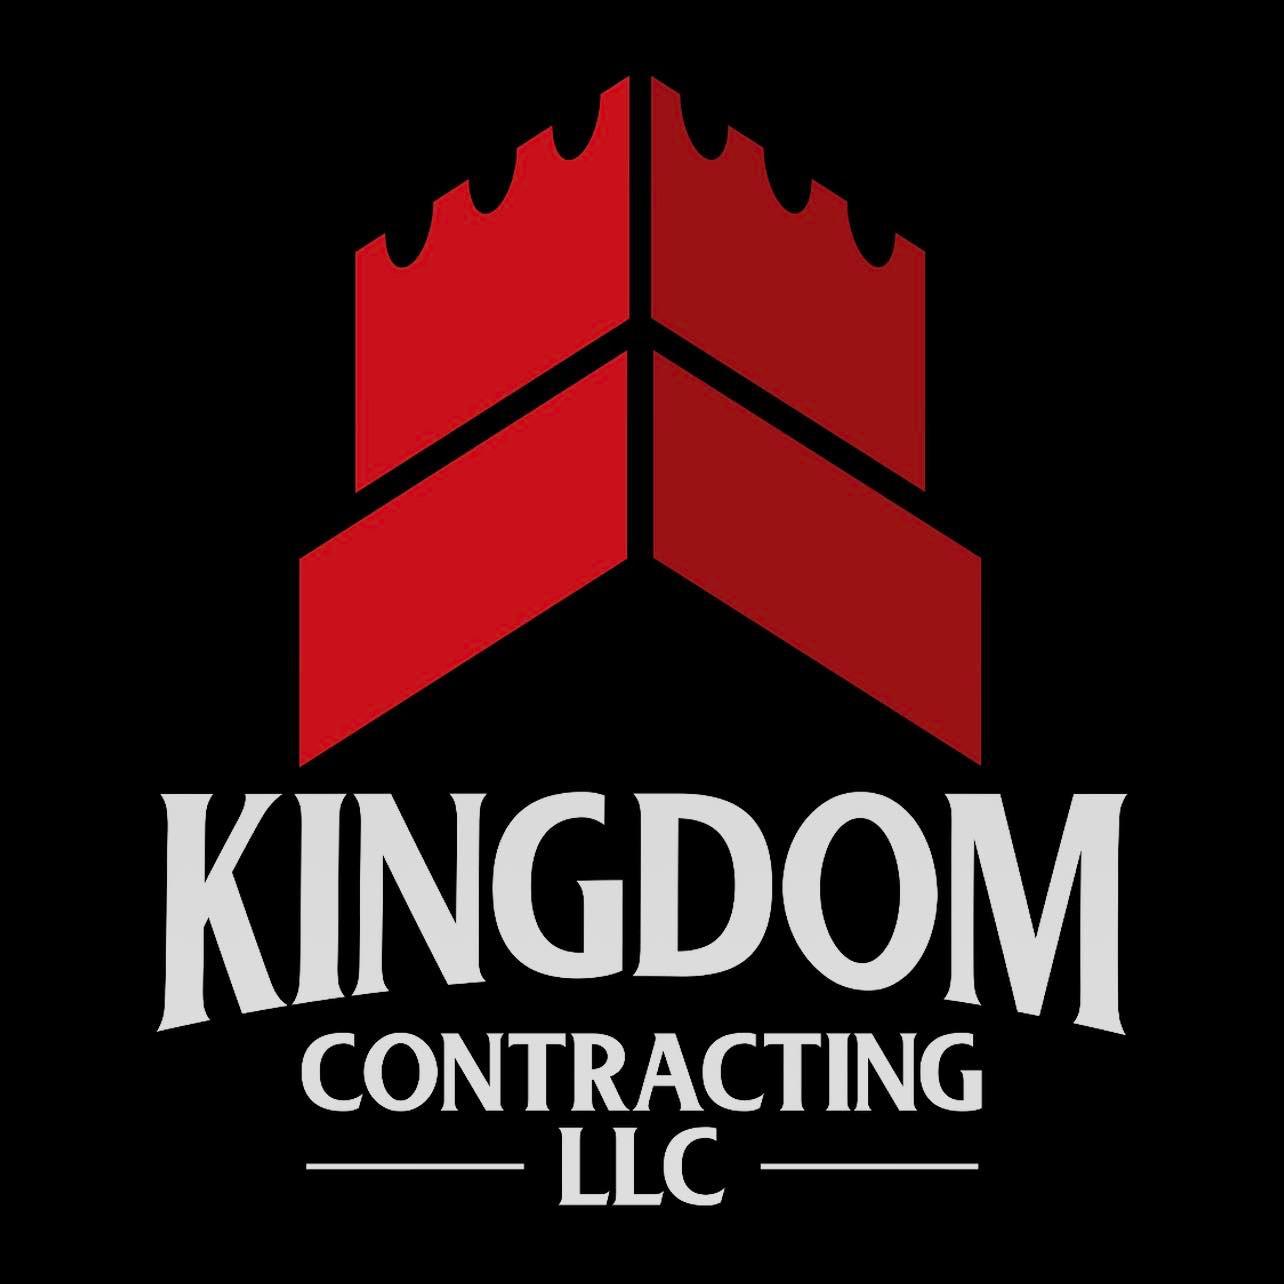 Kingdom Contracting LLC - Pompton Plains, NJ - (862)274-2800 | ShowMeLocal.com